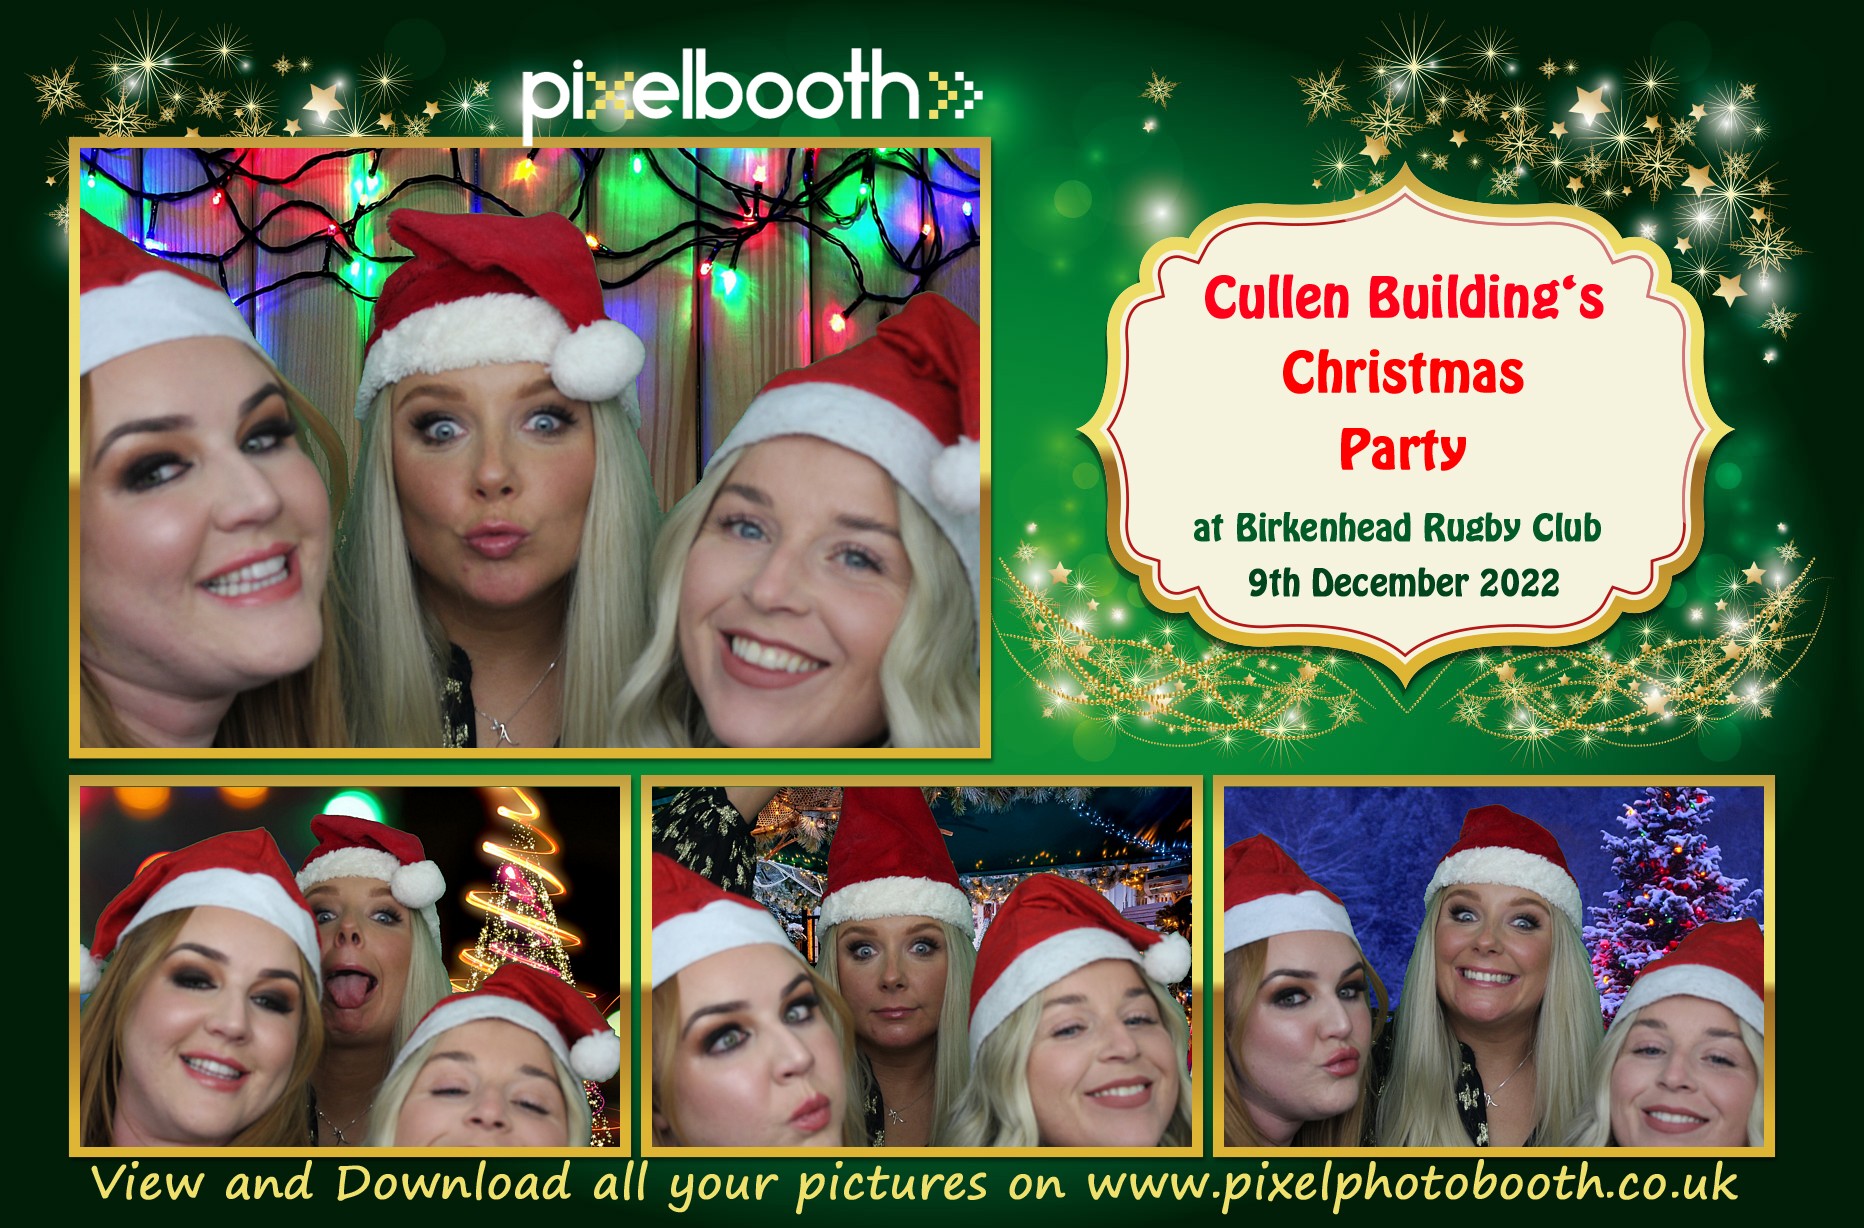 9th Dec 2022: Cullen Buildings XMas Party at Birkenhead Rugby club